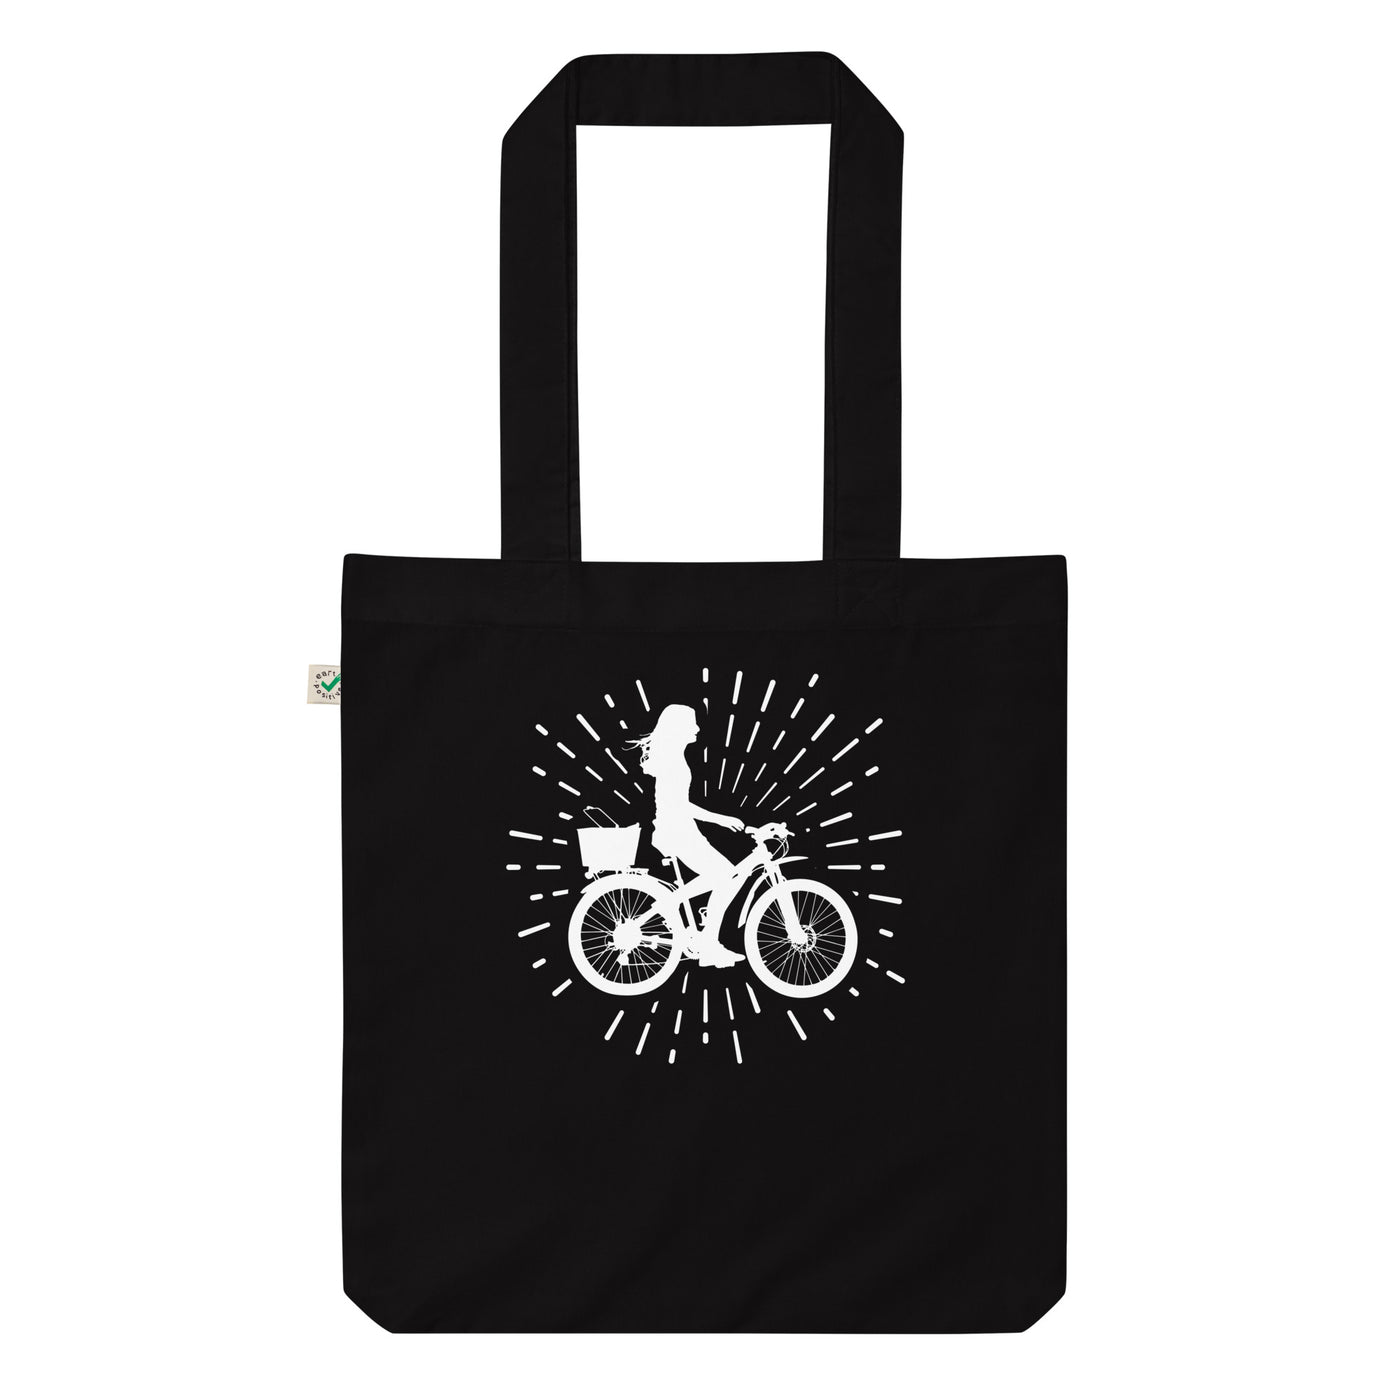 Feuerwerk Und Radfahren 2 - Organic Einkaufstasche fahrrad